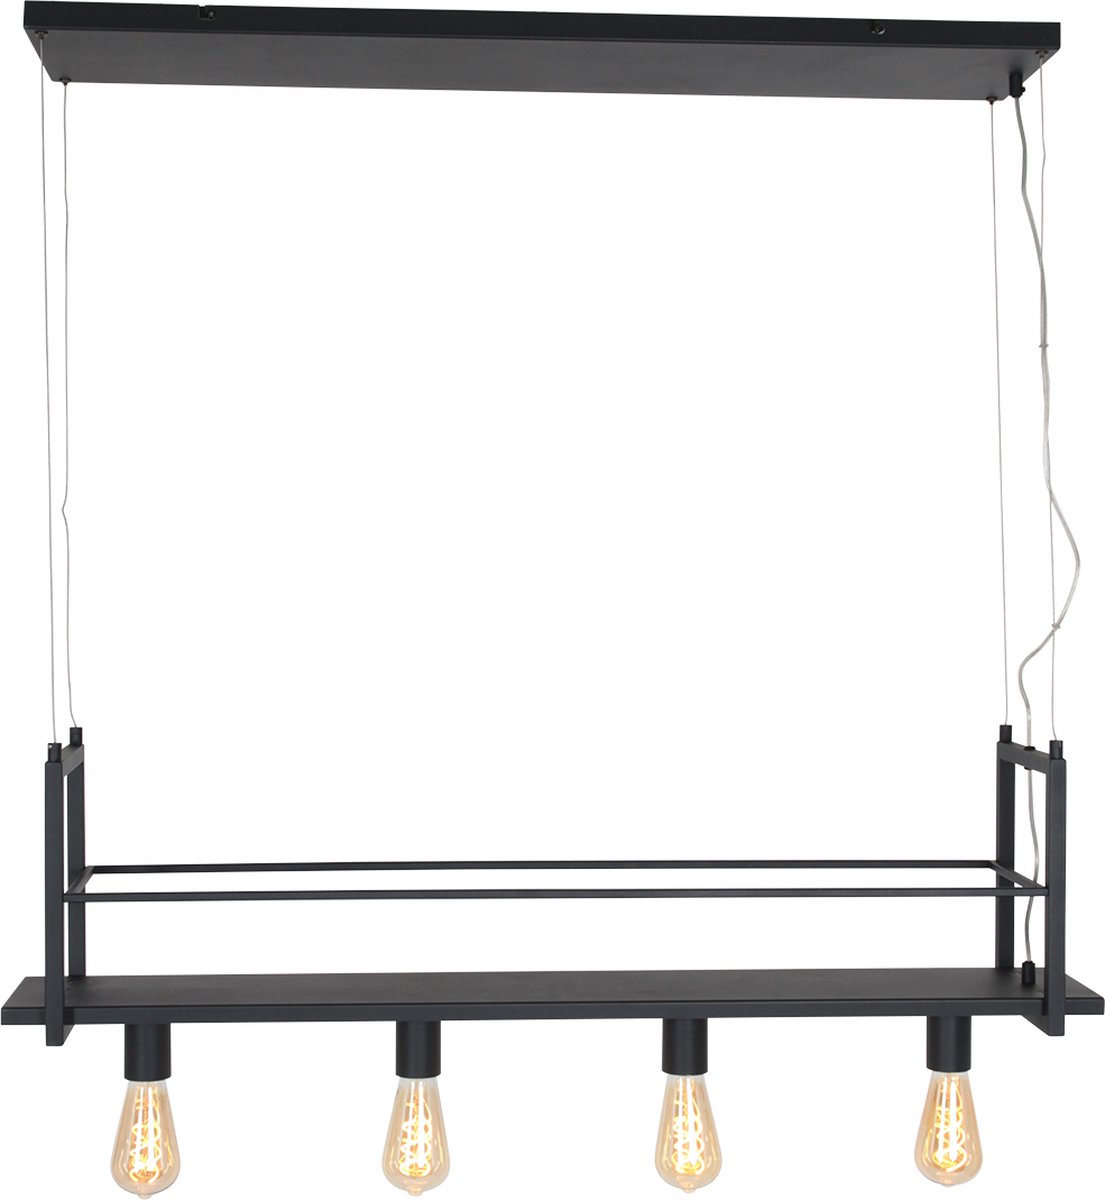 Hanglamp Buckley met rekje | 100 cm | 4 lichts | eettafel lamp | eetkamer / woonkamer | landelijk / modern / design / industieel